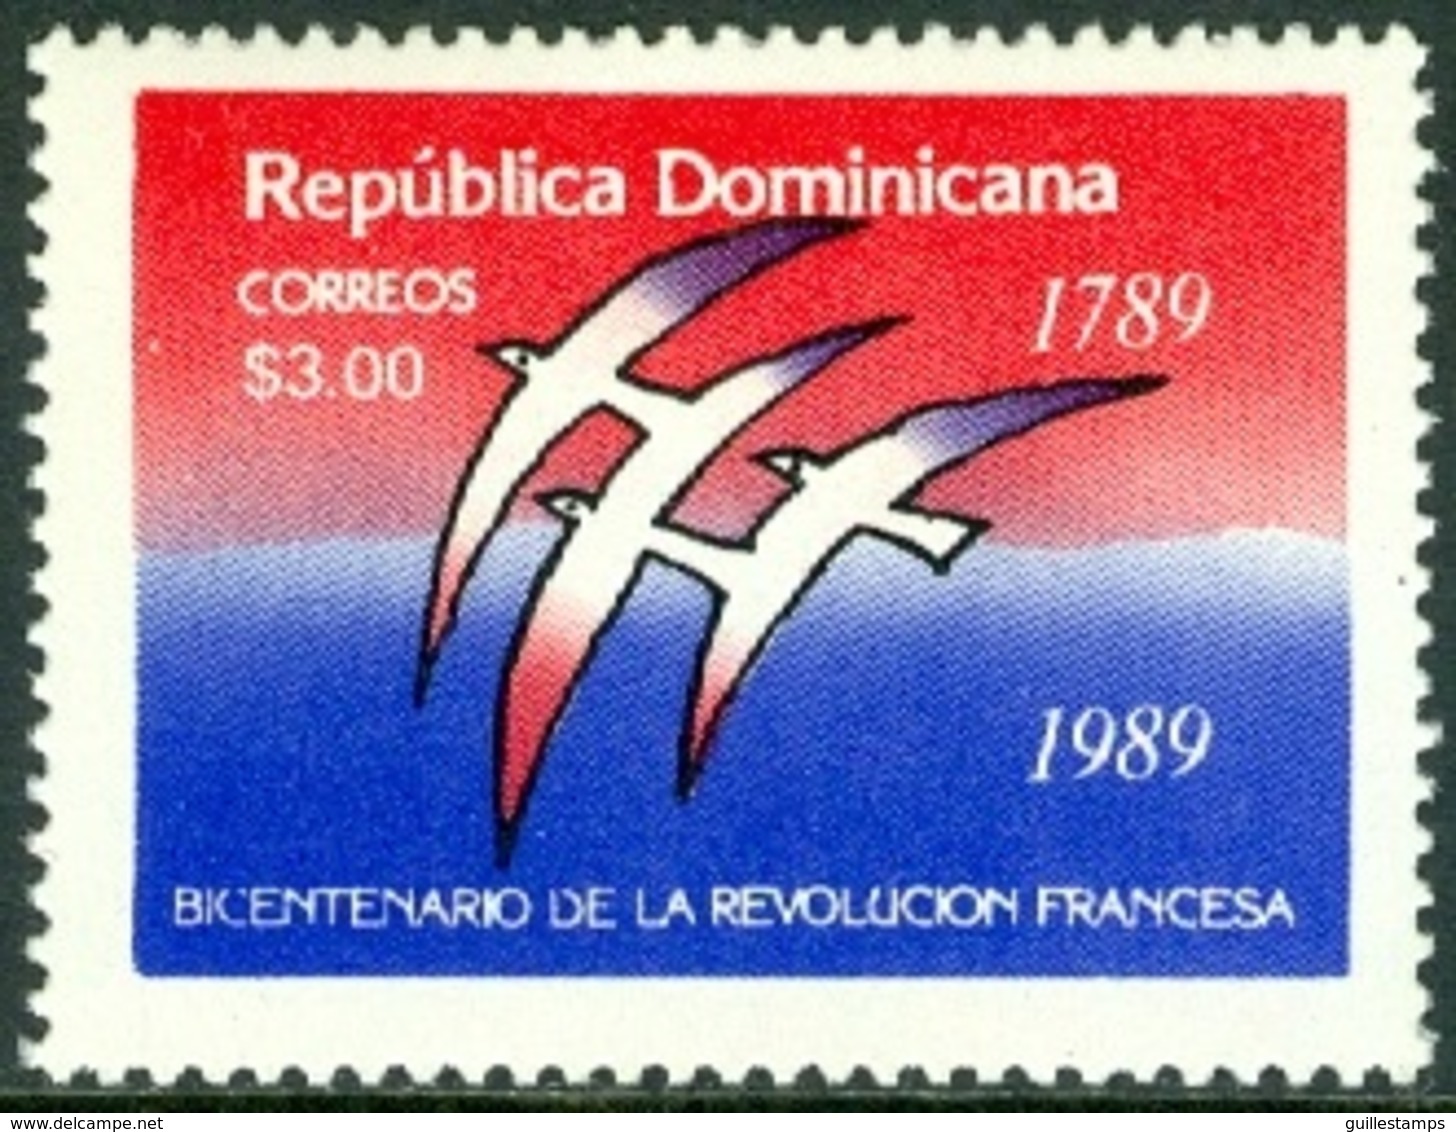 DOMINICAN REPUBLIC 1988 FRENCH REVOLUTION BICENTENARY** (MNH) - Dominican Republic